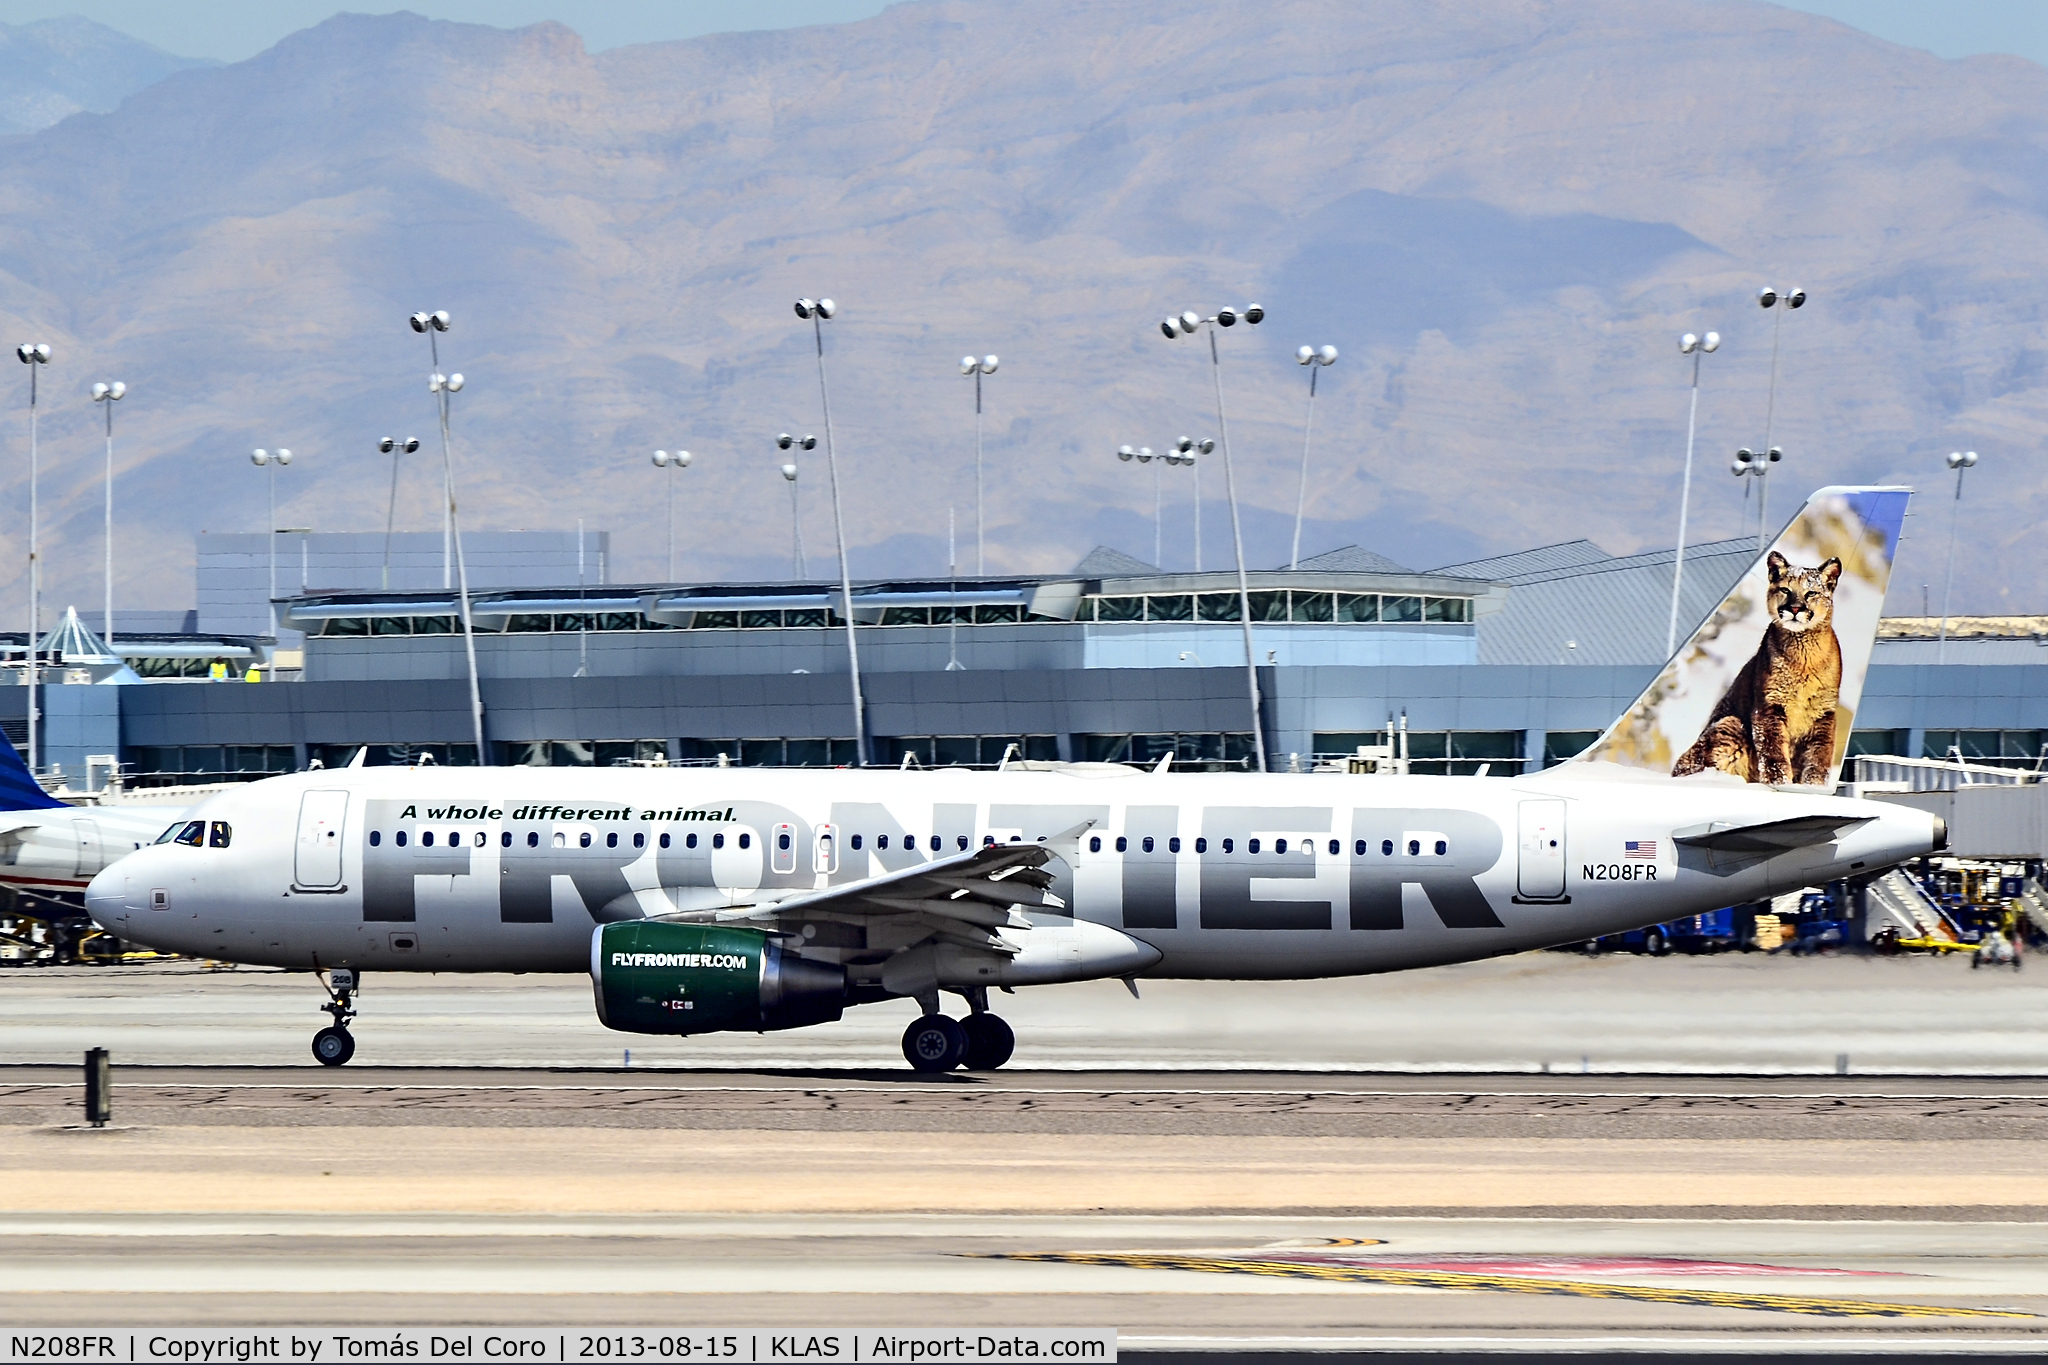 N208FR, 2011 Airbus A320-214 C/N 4562, N208FR Frontier Airlines Airbus A320-214 (cn 4562)

McCarran International Airport (KLAS)
Las Vegas, Nevada
TDelCoro
August 15, 2013